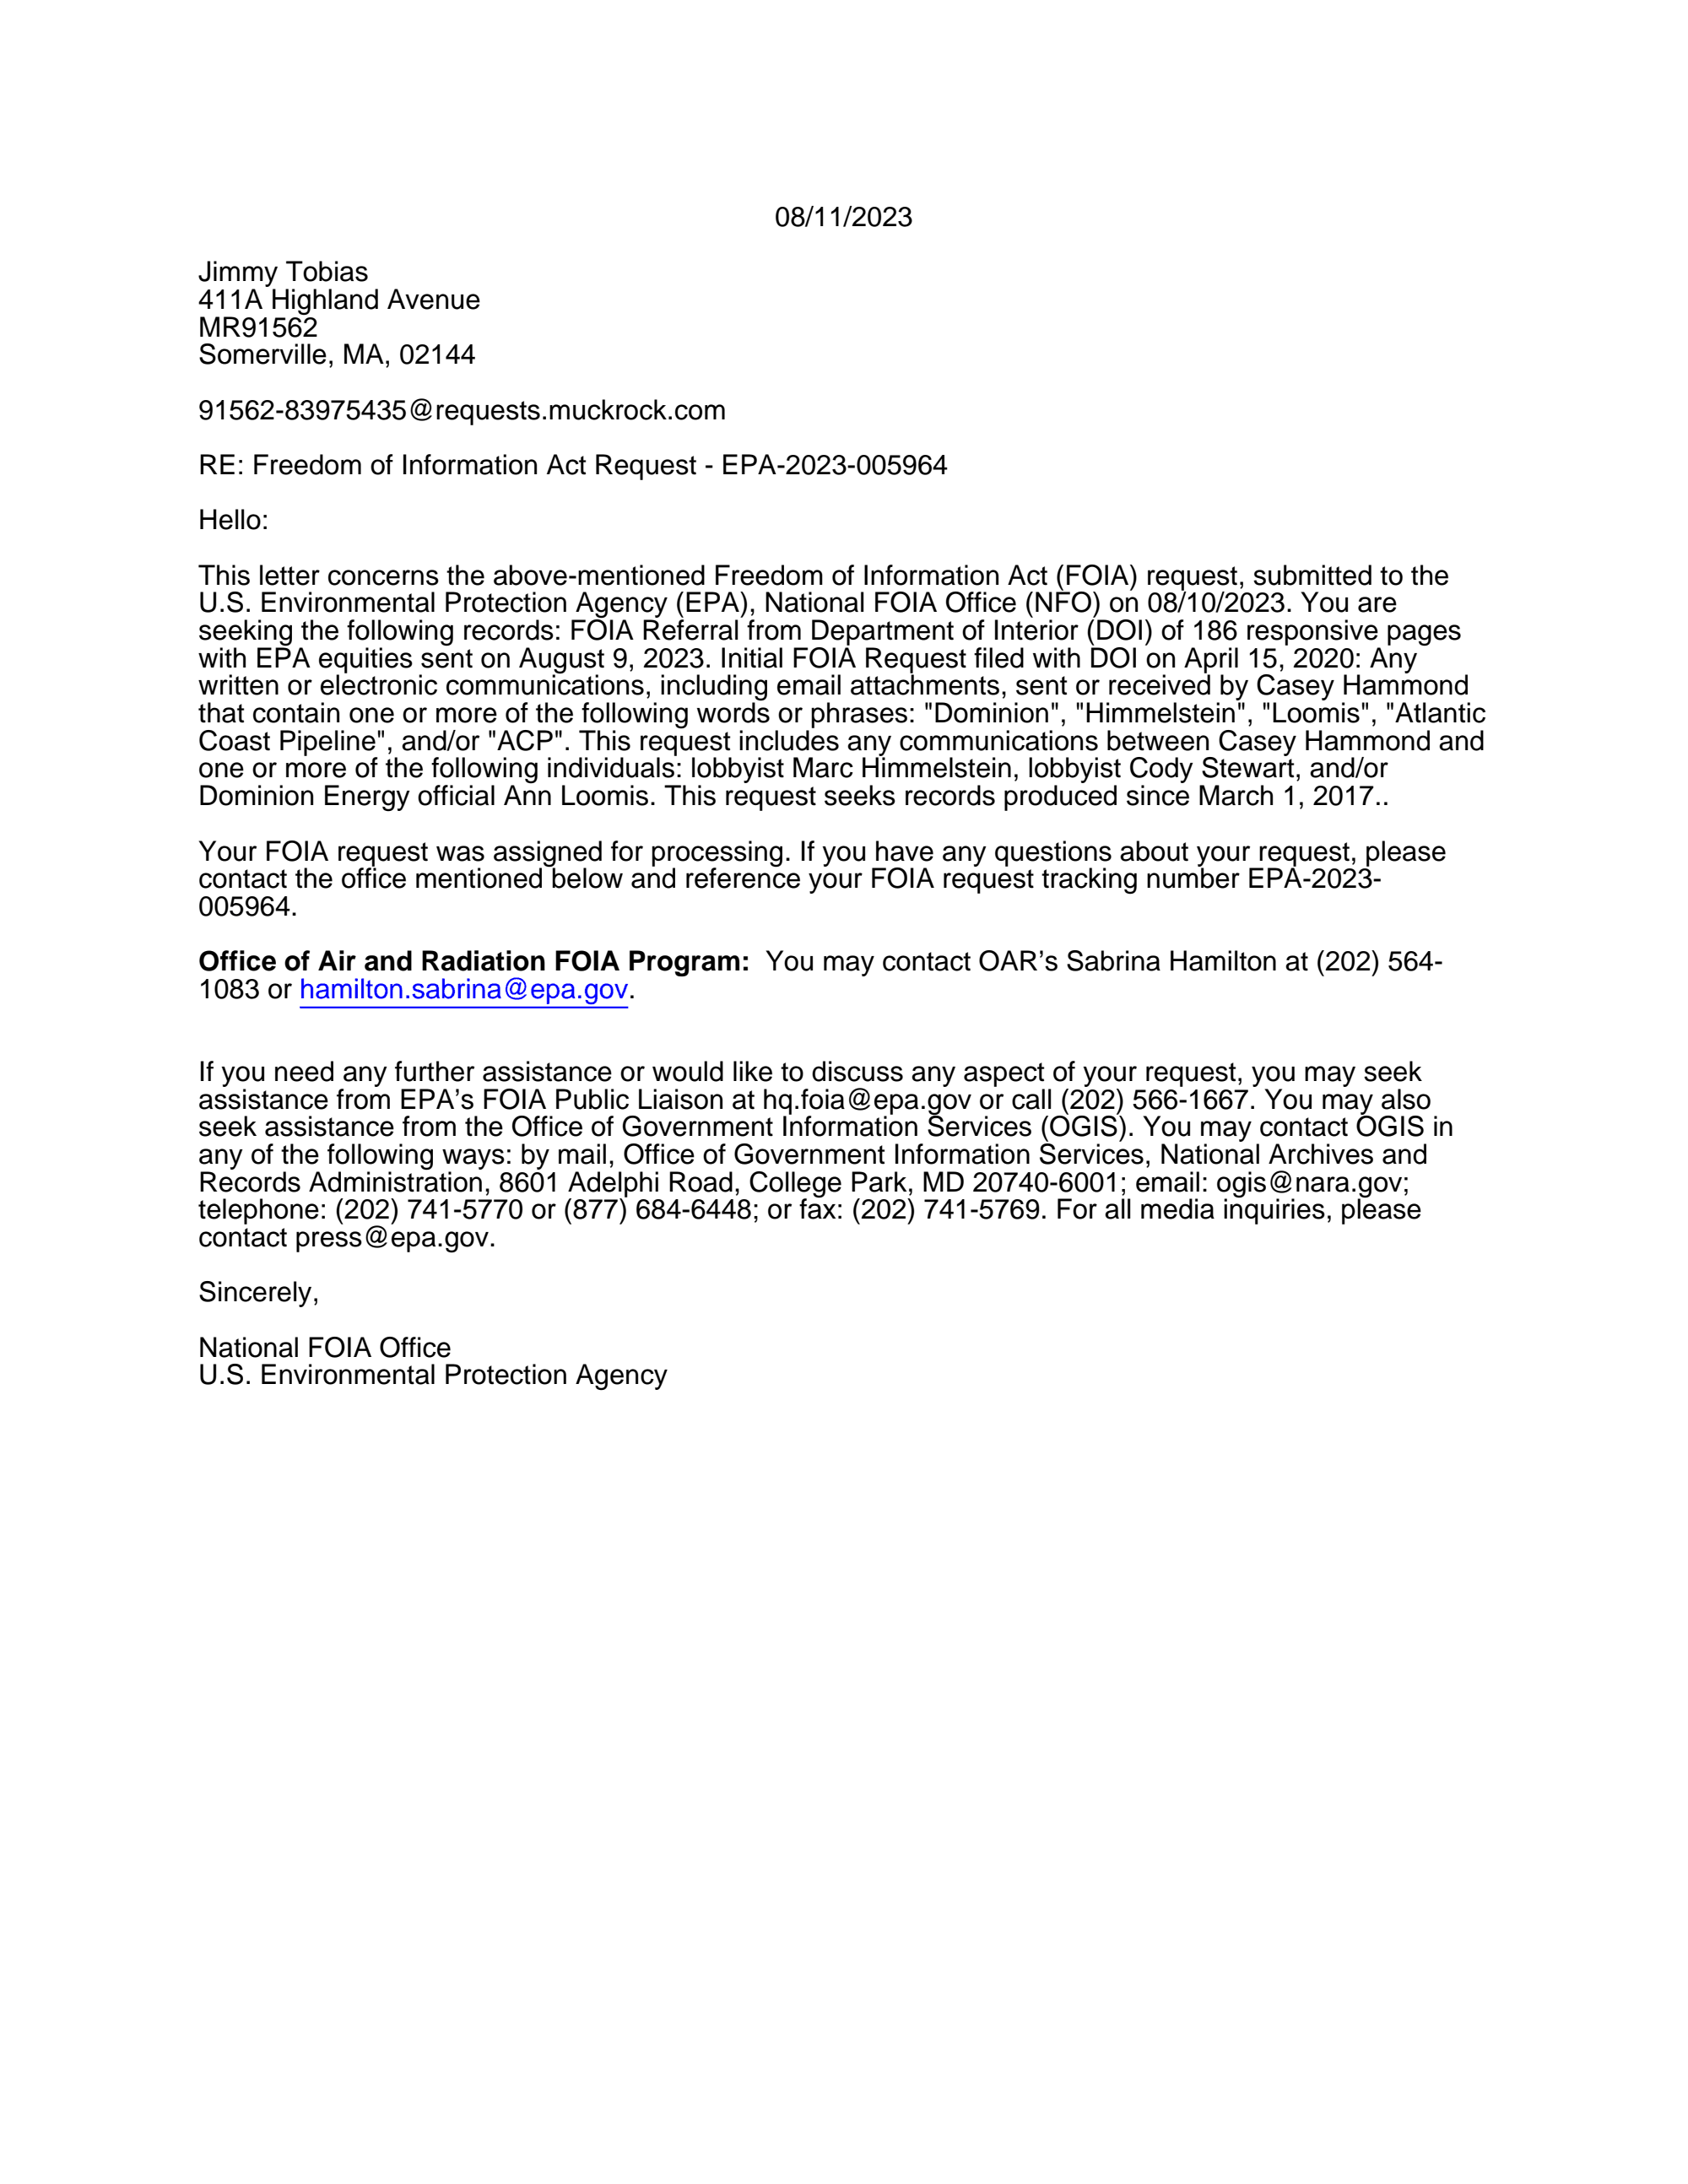 Foia Request Assignment Letter Documentcloud 4207